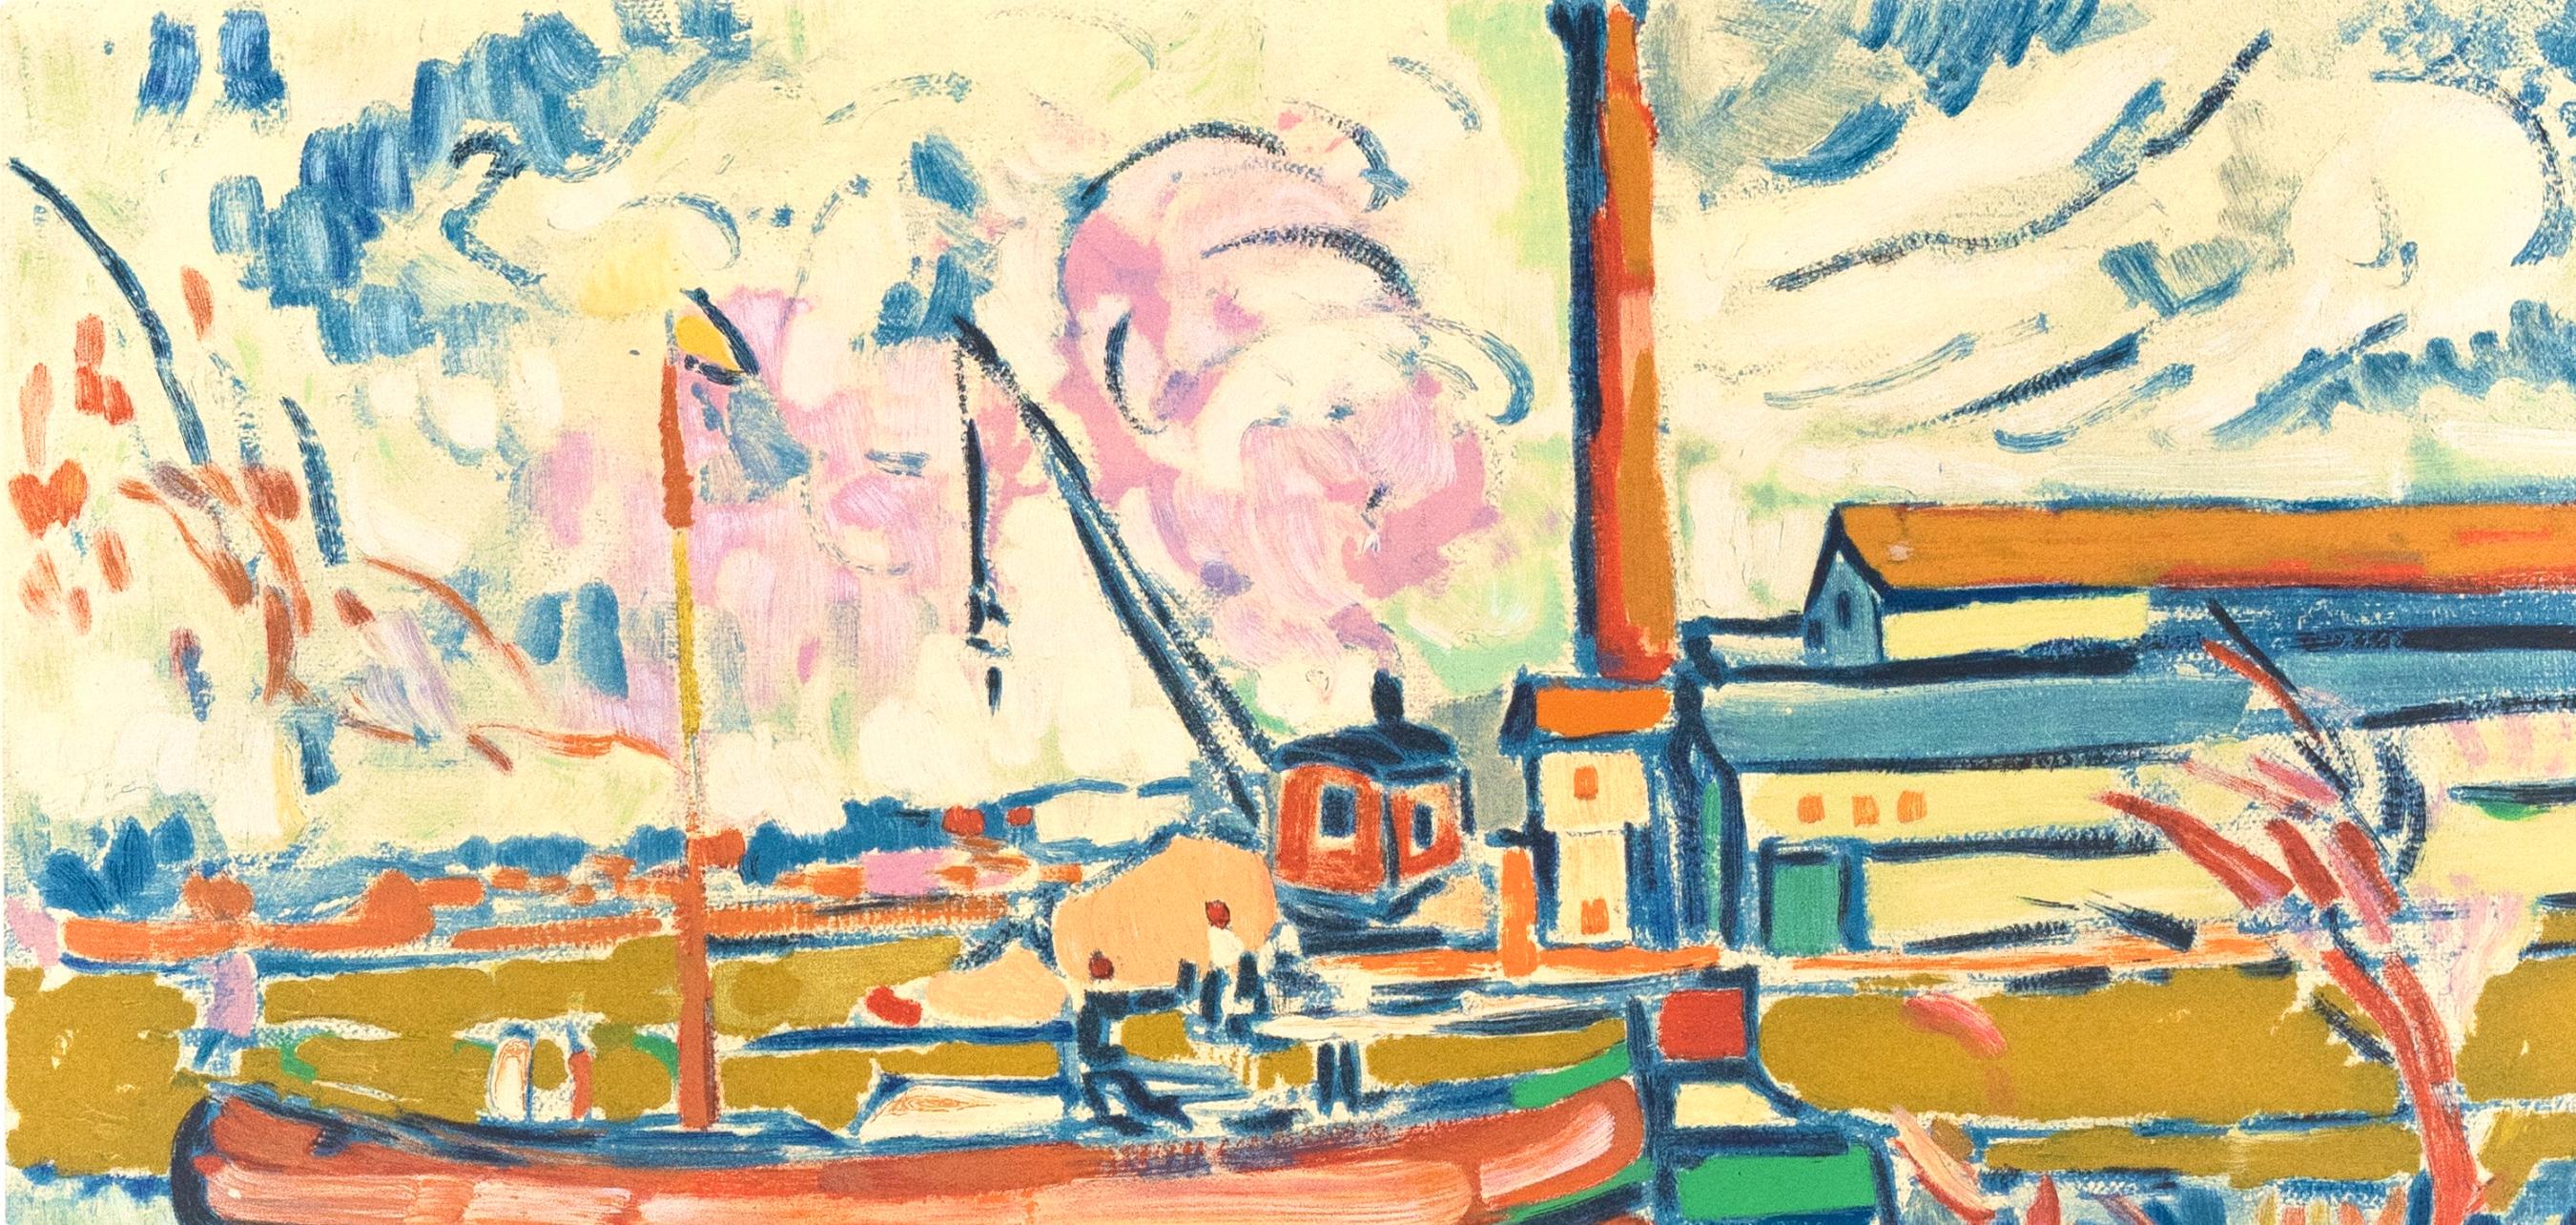 de Vlaminck, Paysage à Chatou, Fauves, The Collective Pierre Lévy (d'après) - Moderne Print par Maurice de Vlaminck